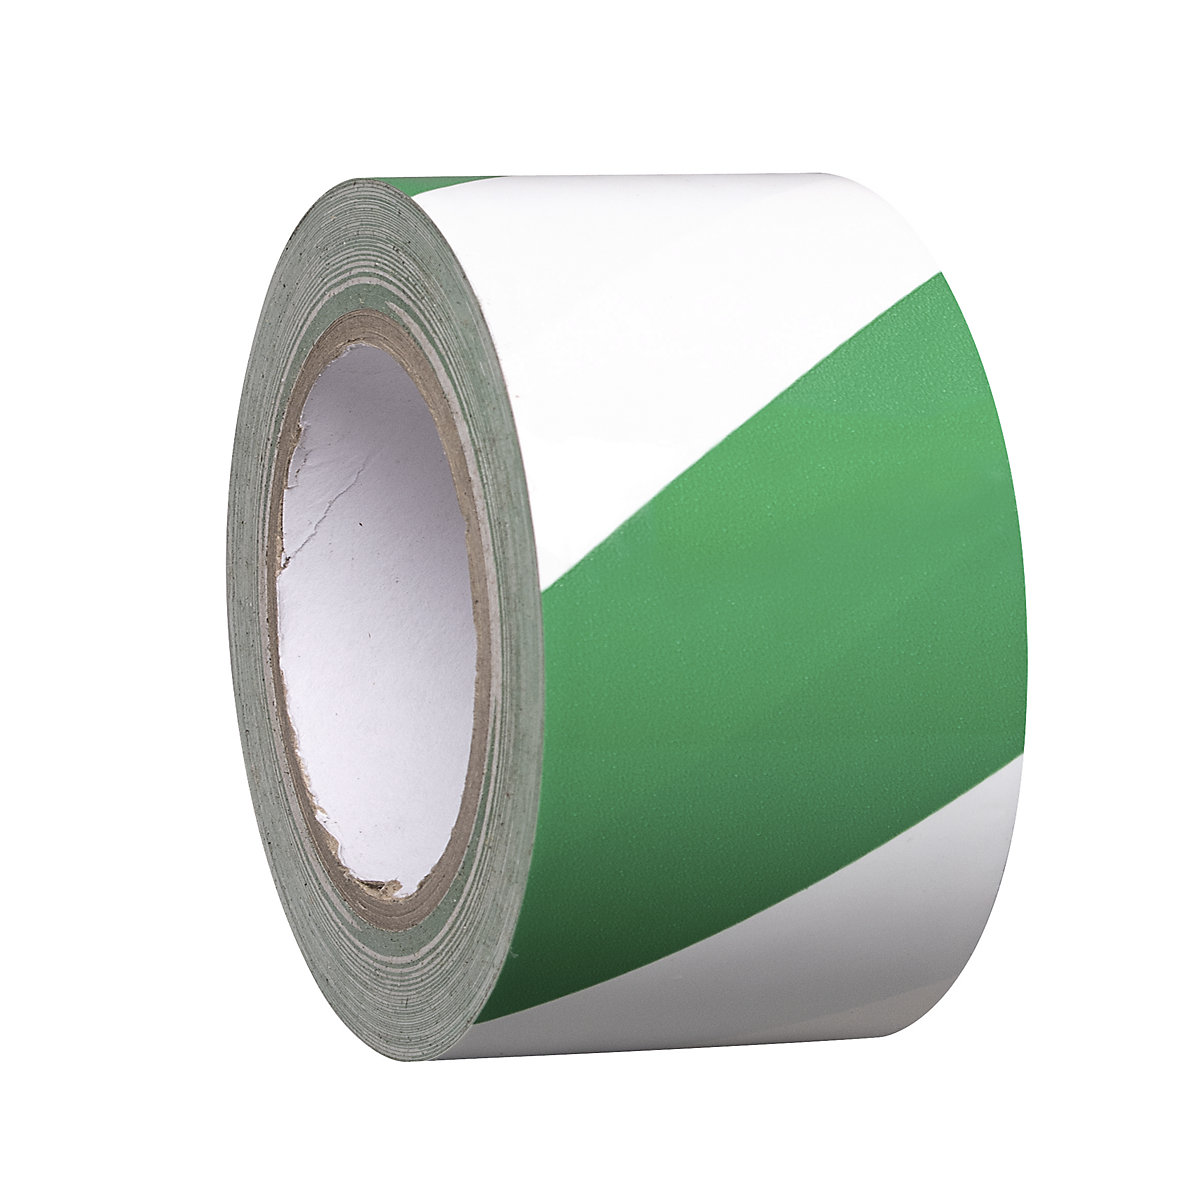 Podlahový značkovací pás z vinylu, dvoubarevný, šířka 75 mm, zelená / bílá, bal.j. 16 rolí-2